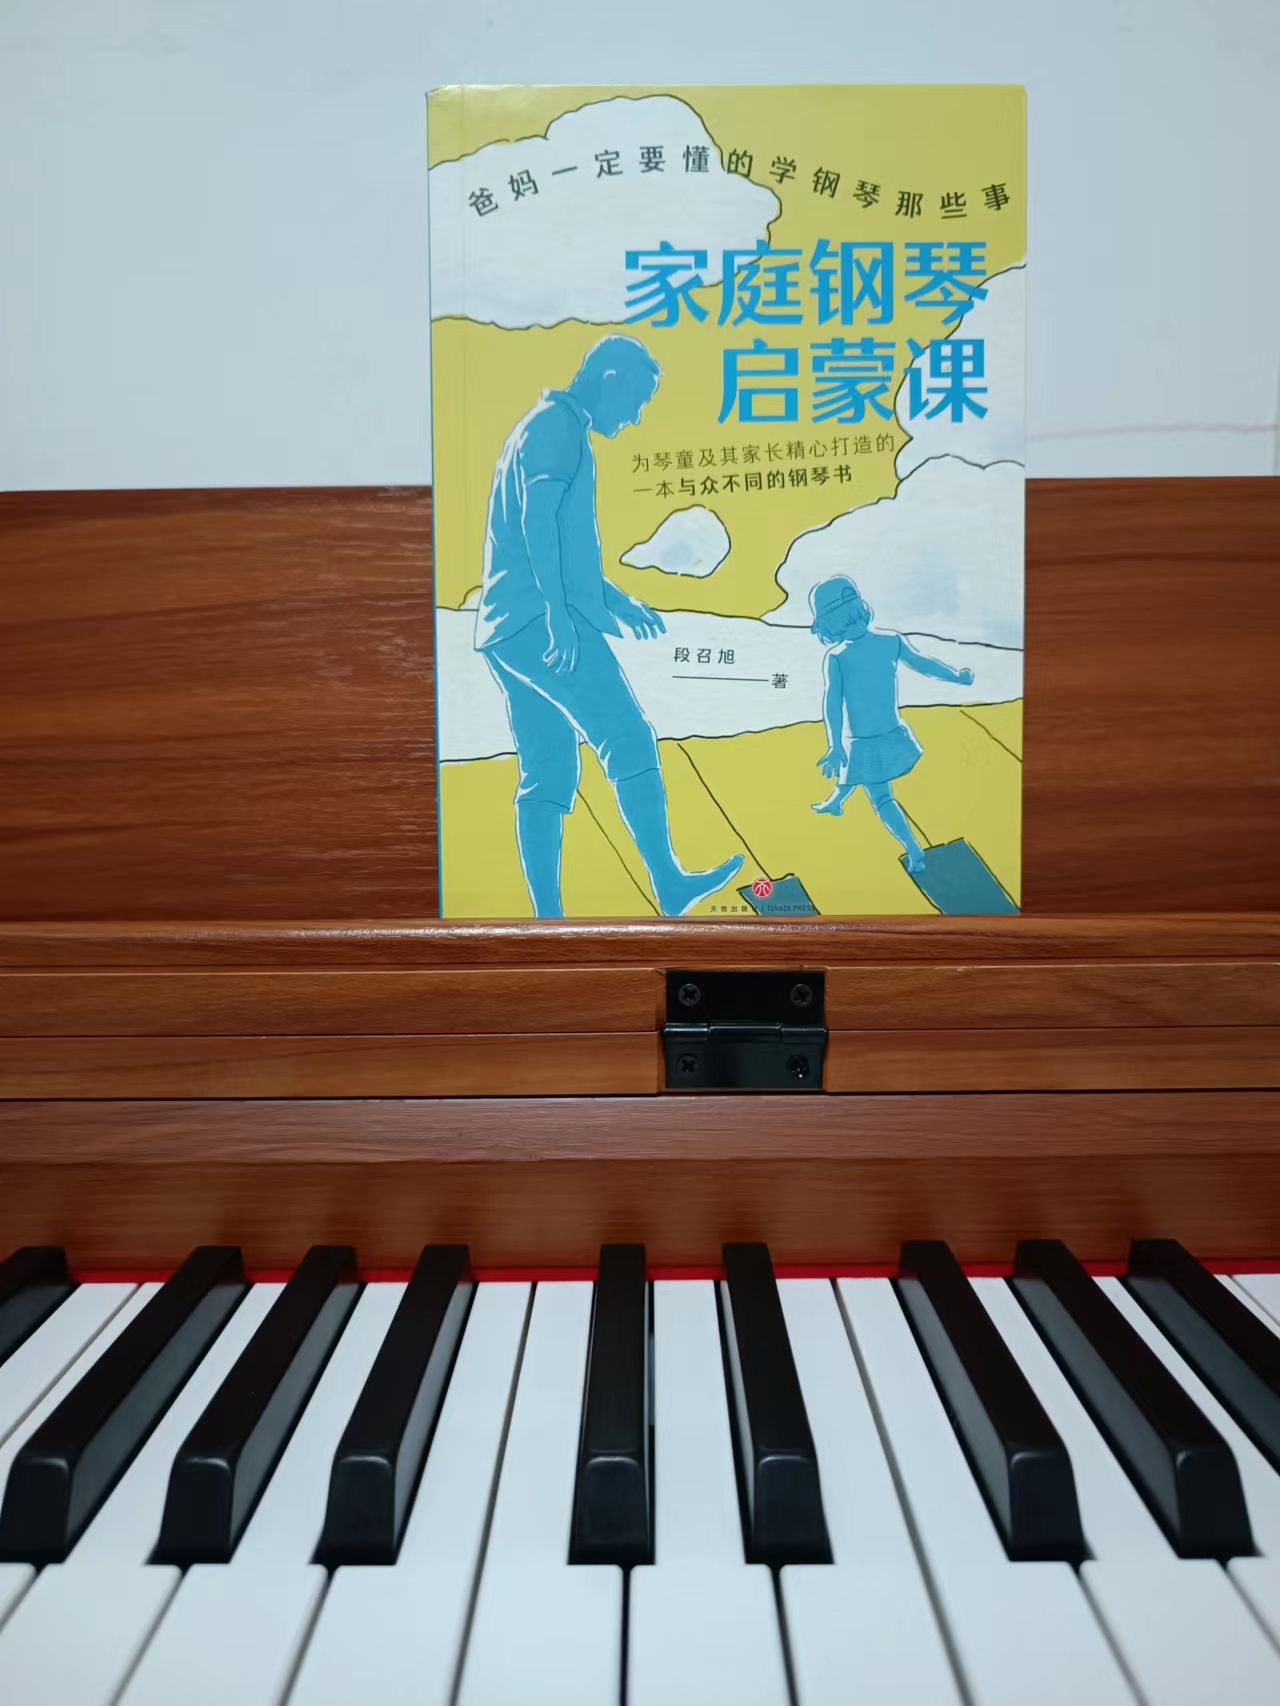 一本书解答了所有你关于学习钢琴的疑问